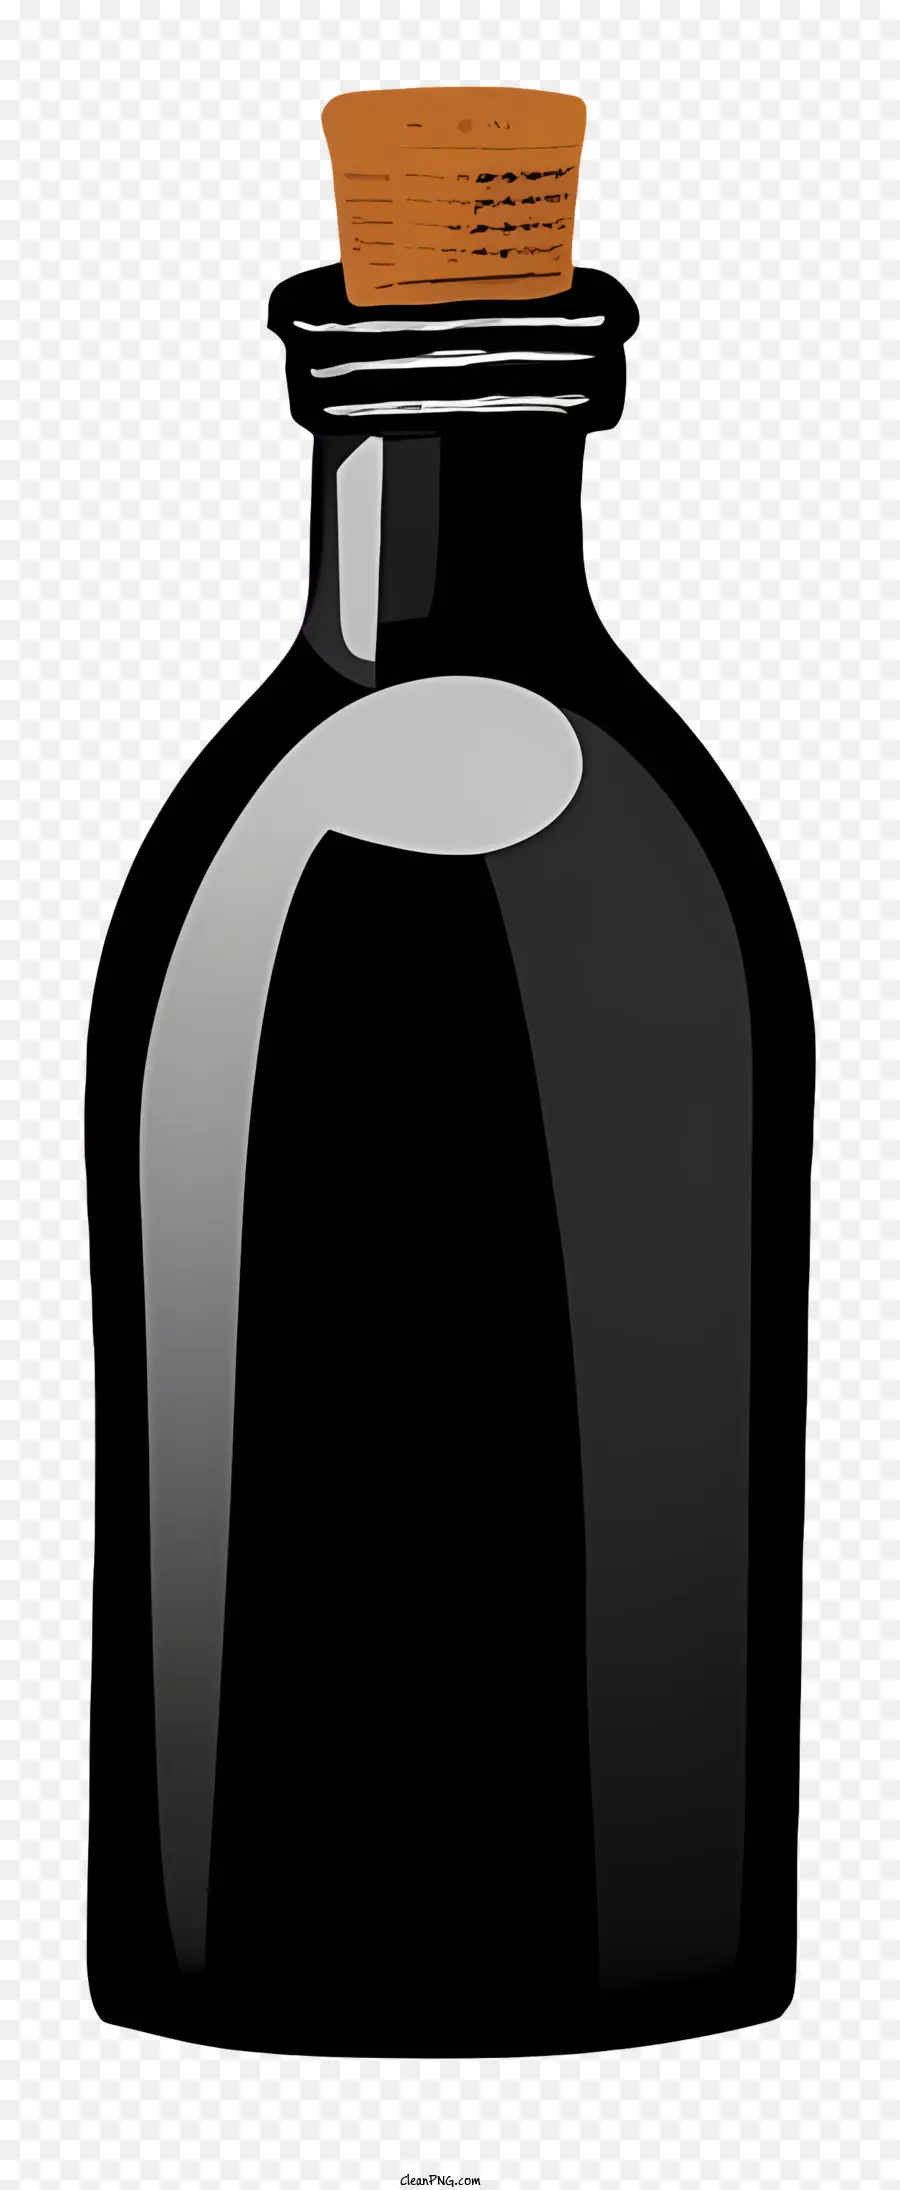 Cartoon Black Glass Bottle in sughero Top marrone Materiale senza etichetta - Bottiglia di vetro nero con top in sughero, design semplice ed elegante